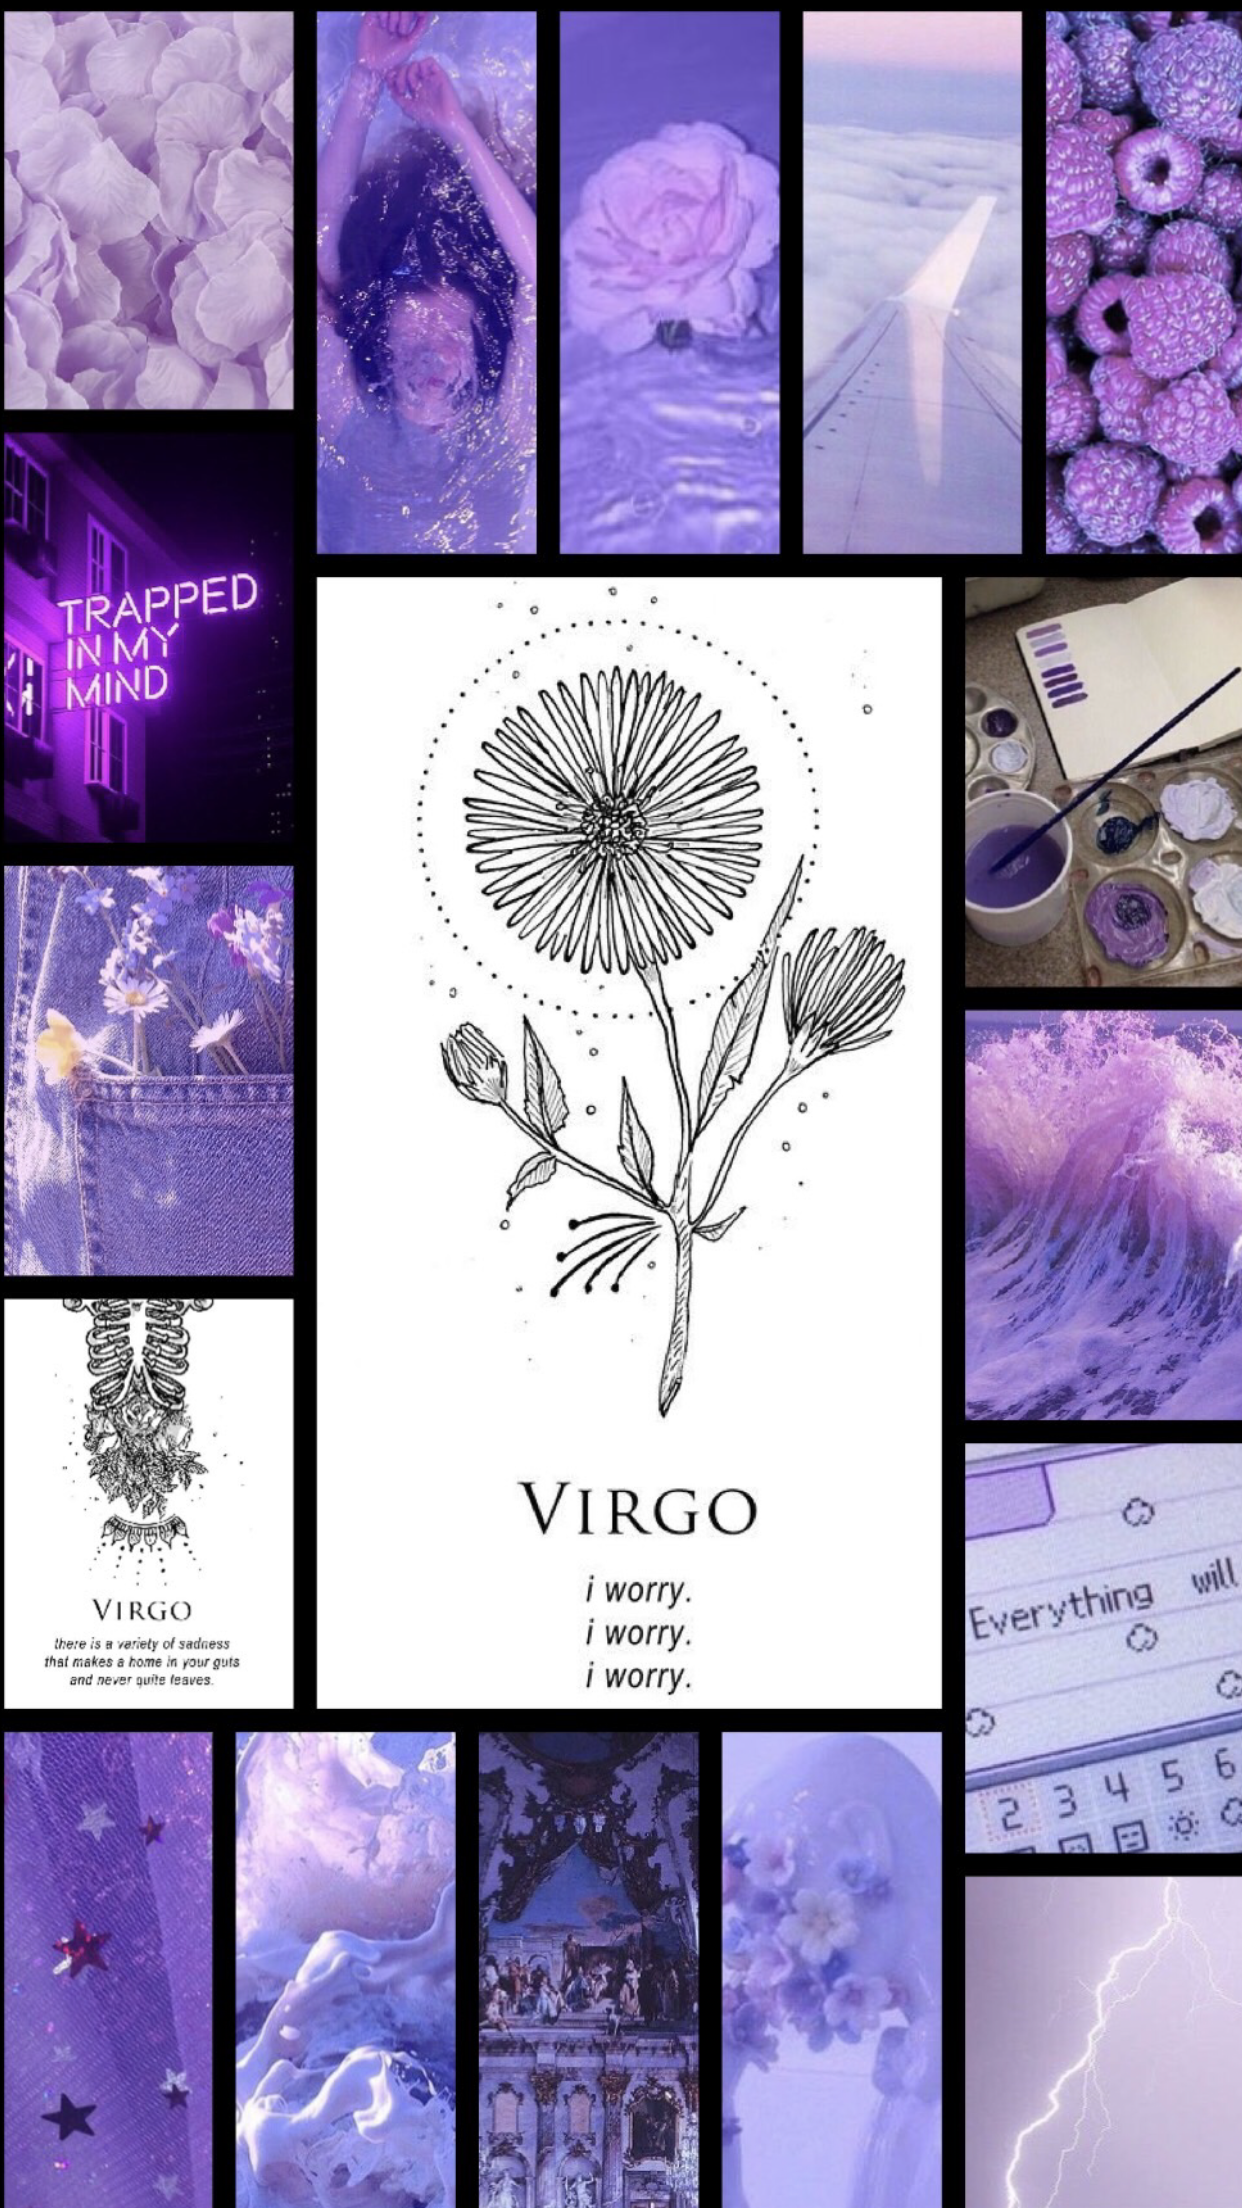 Hình nền Virgo sẽ mang tới một không gian tuyệt vời mới cho điện thoại của bạn.